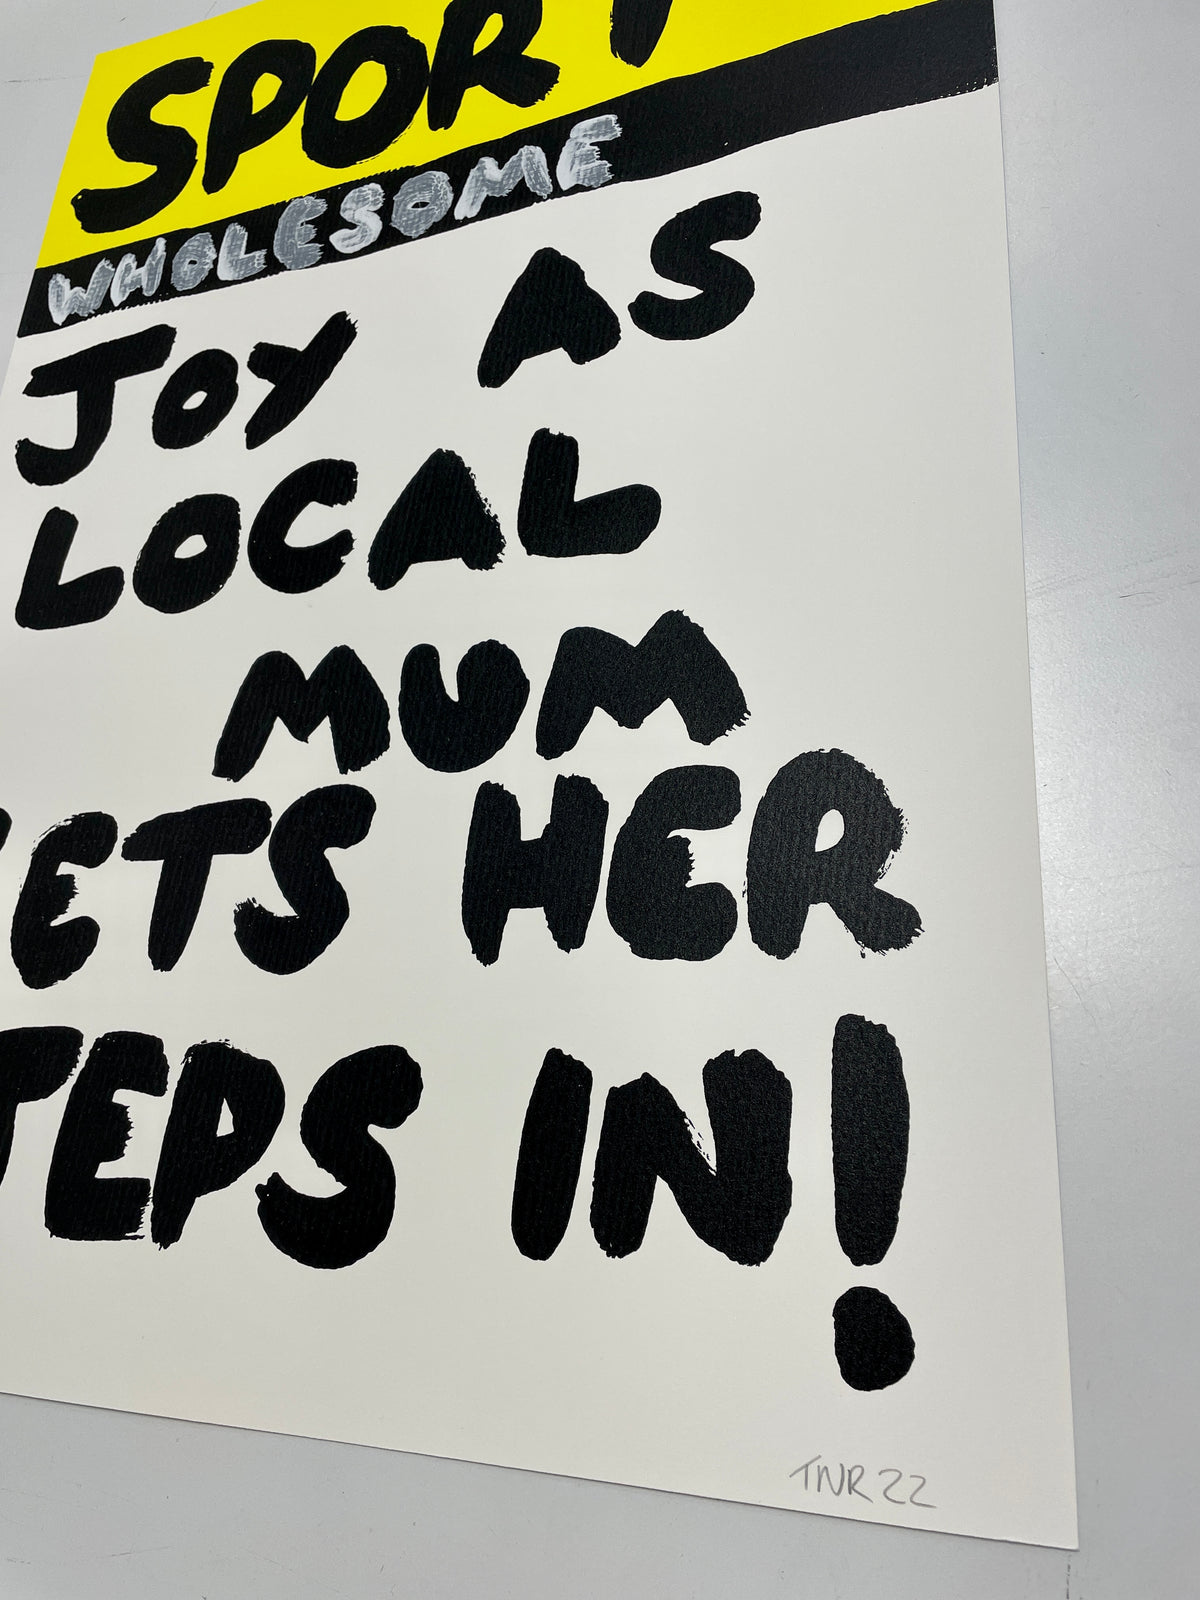 Local Mum (Print Release)